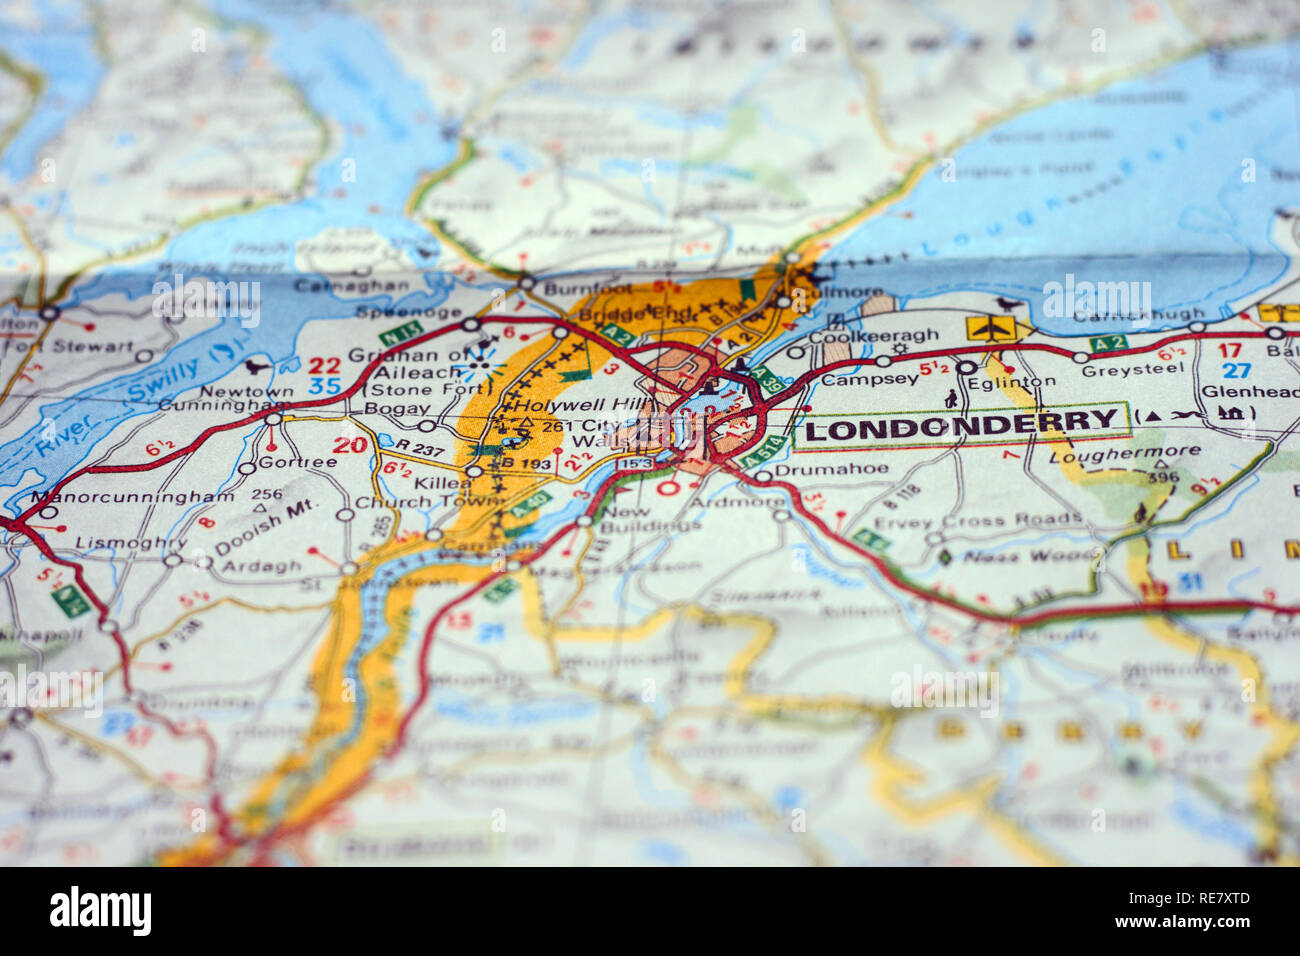 Centrado de forma selectiva de la ciudad de Londonderry en un mapa de papel con la frontera entre la República de Irlanda e Irlanda Norhern Foto de stock